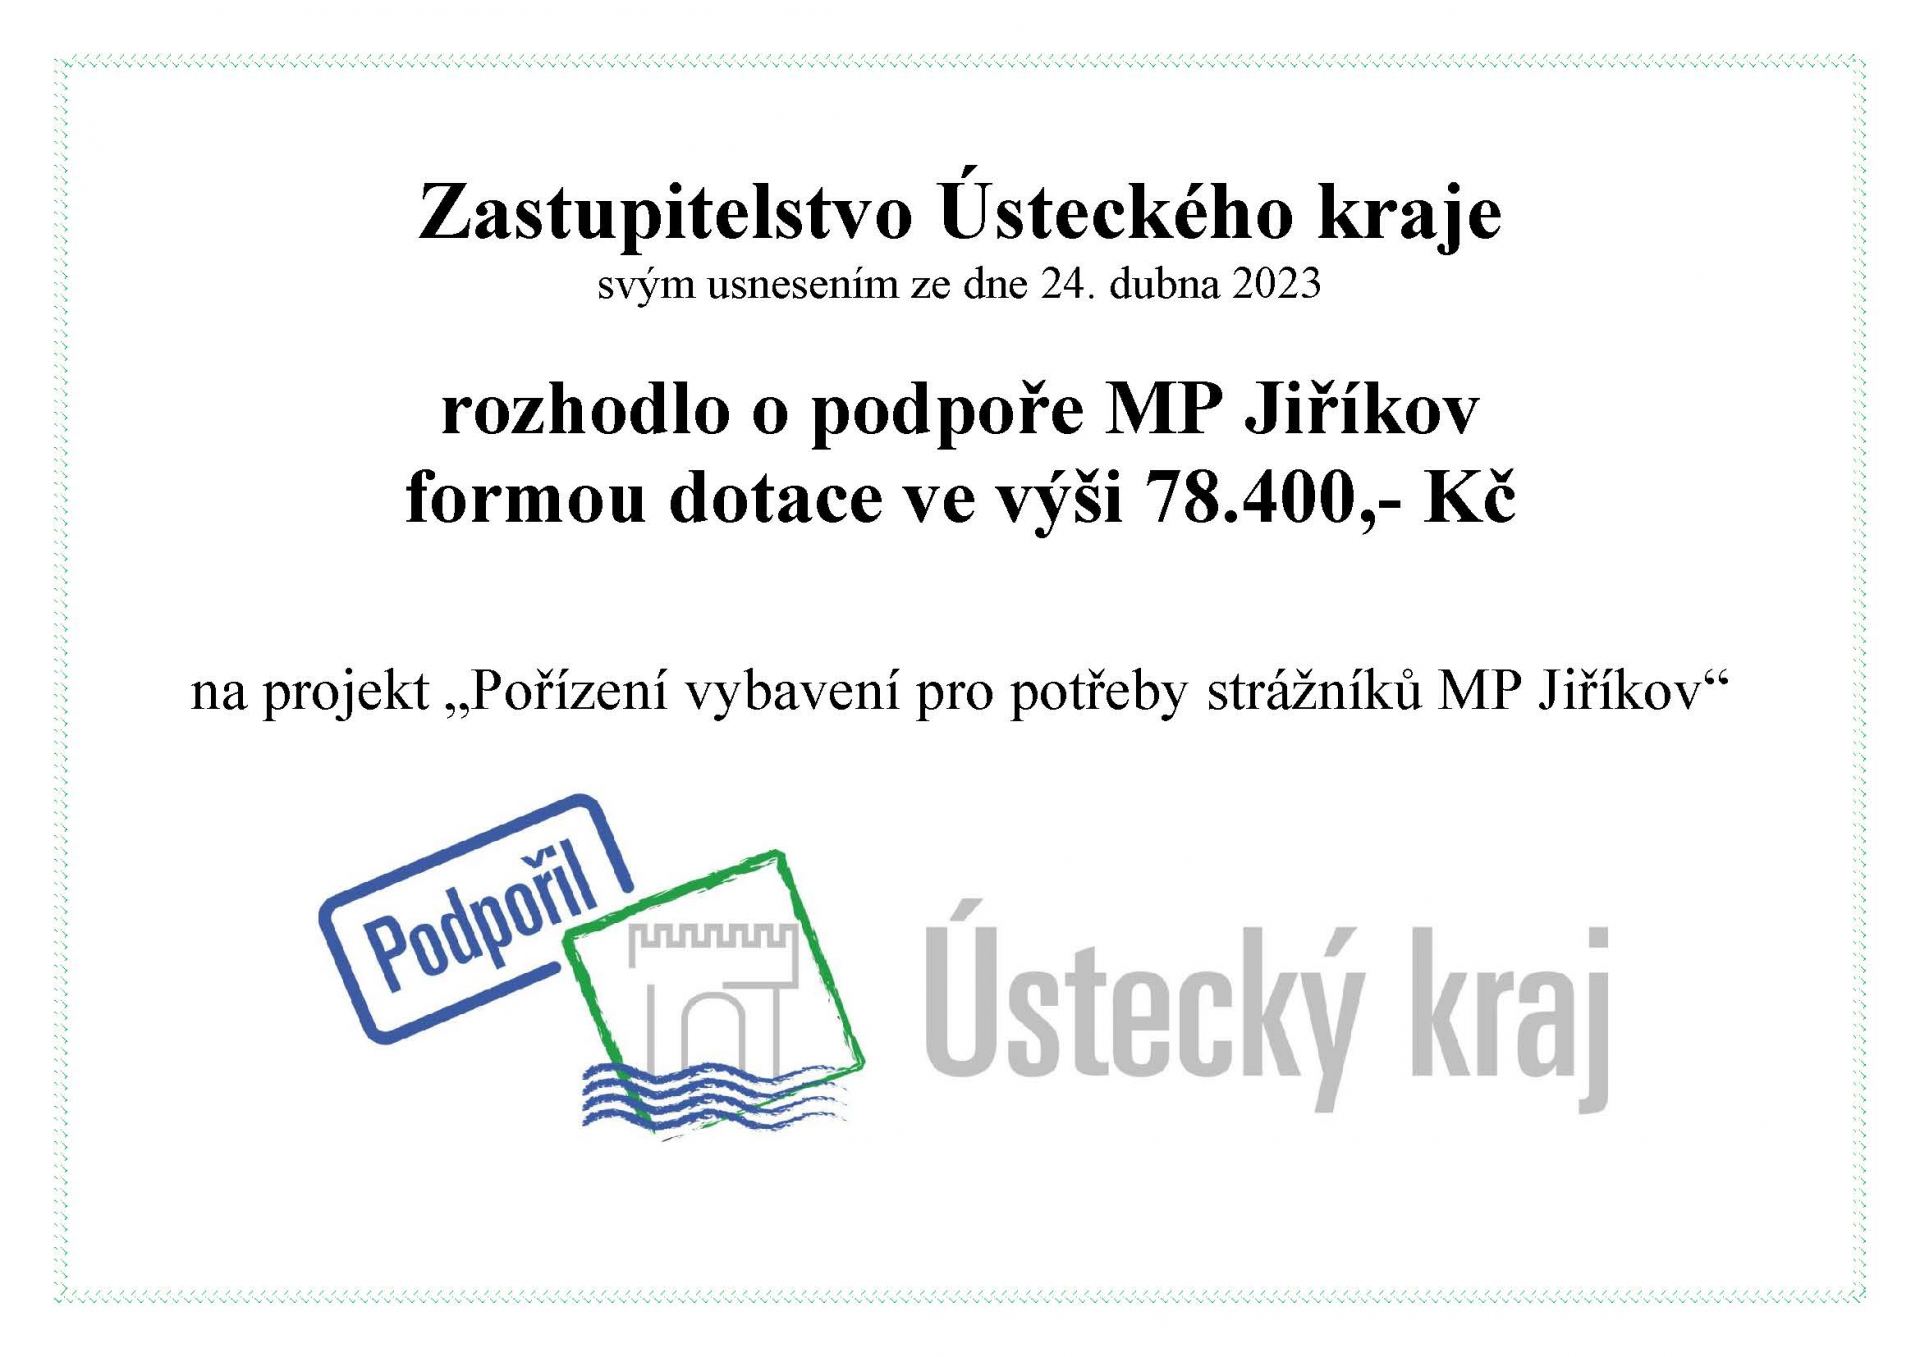 Pořízení vybavení pro potřeby strážníků MP Jiříkov